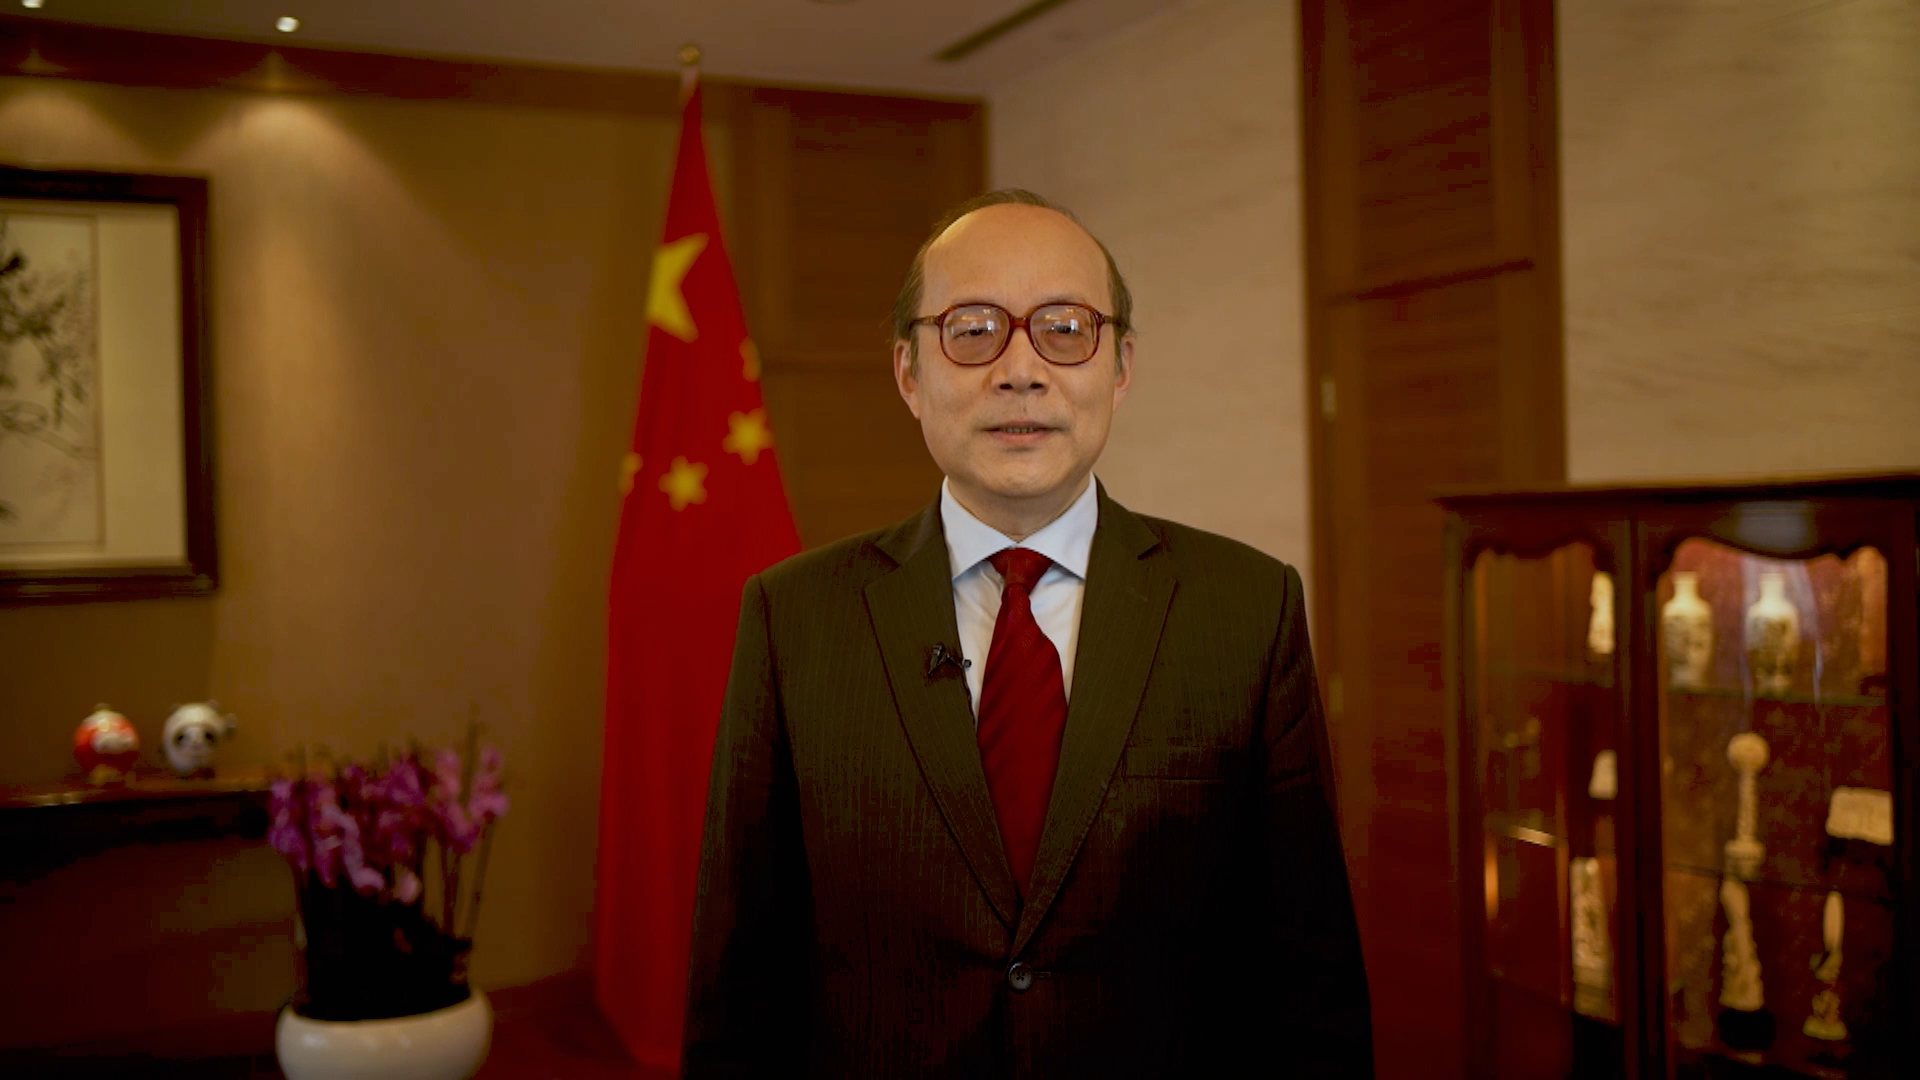 中國常駐聯合國日內瓦辦事處和瑞士其他國際組織代表陳旭大使在日內瓦發表致辭